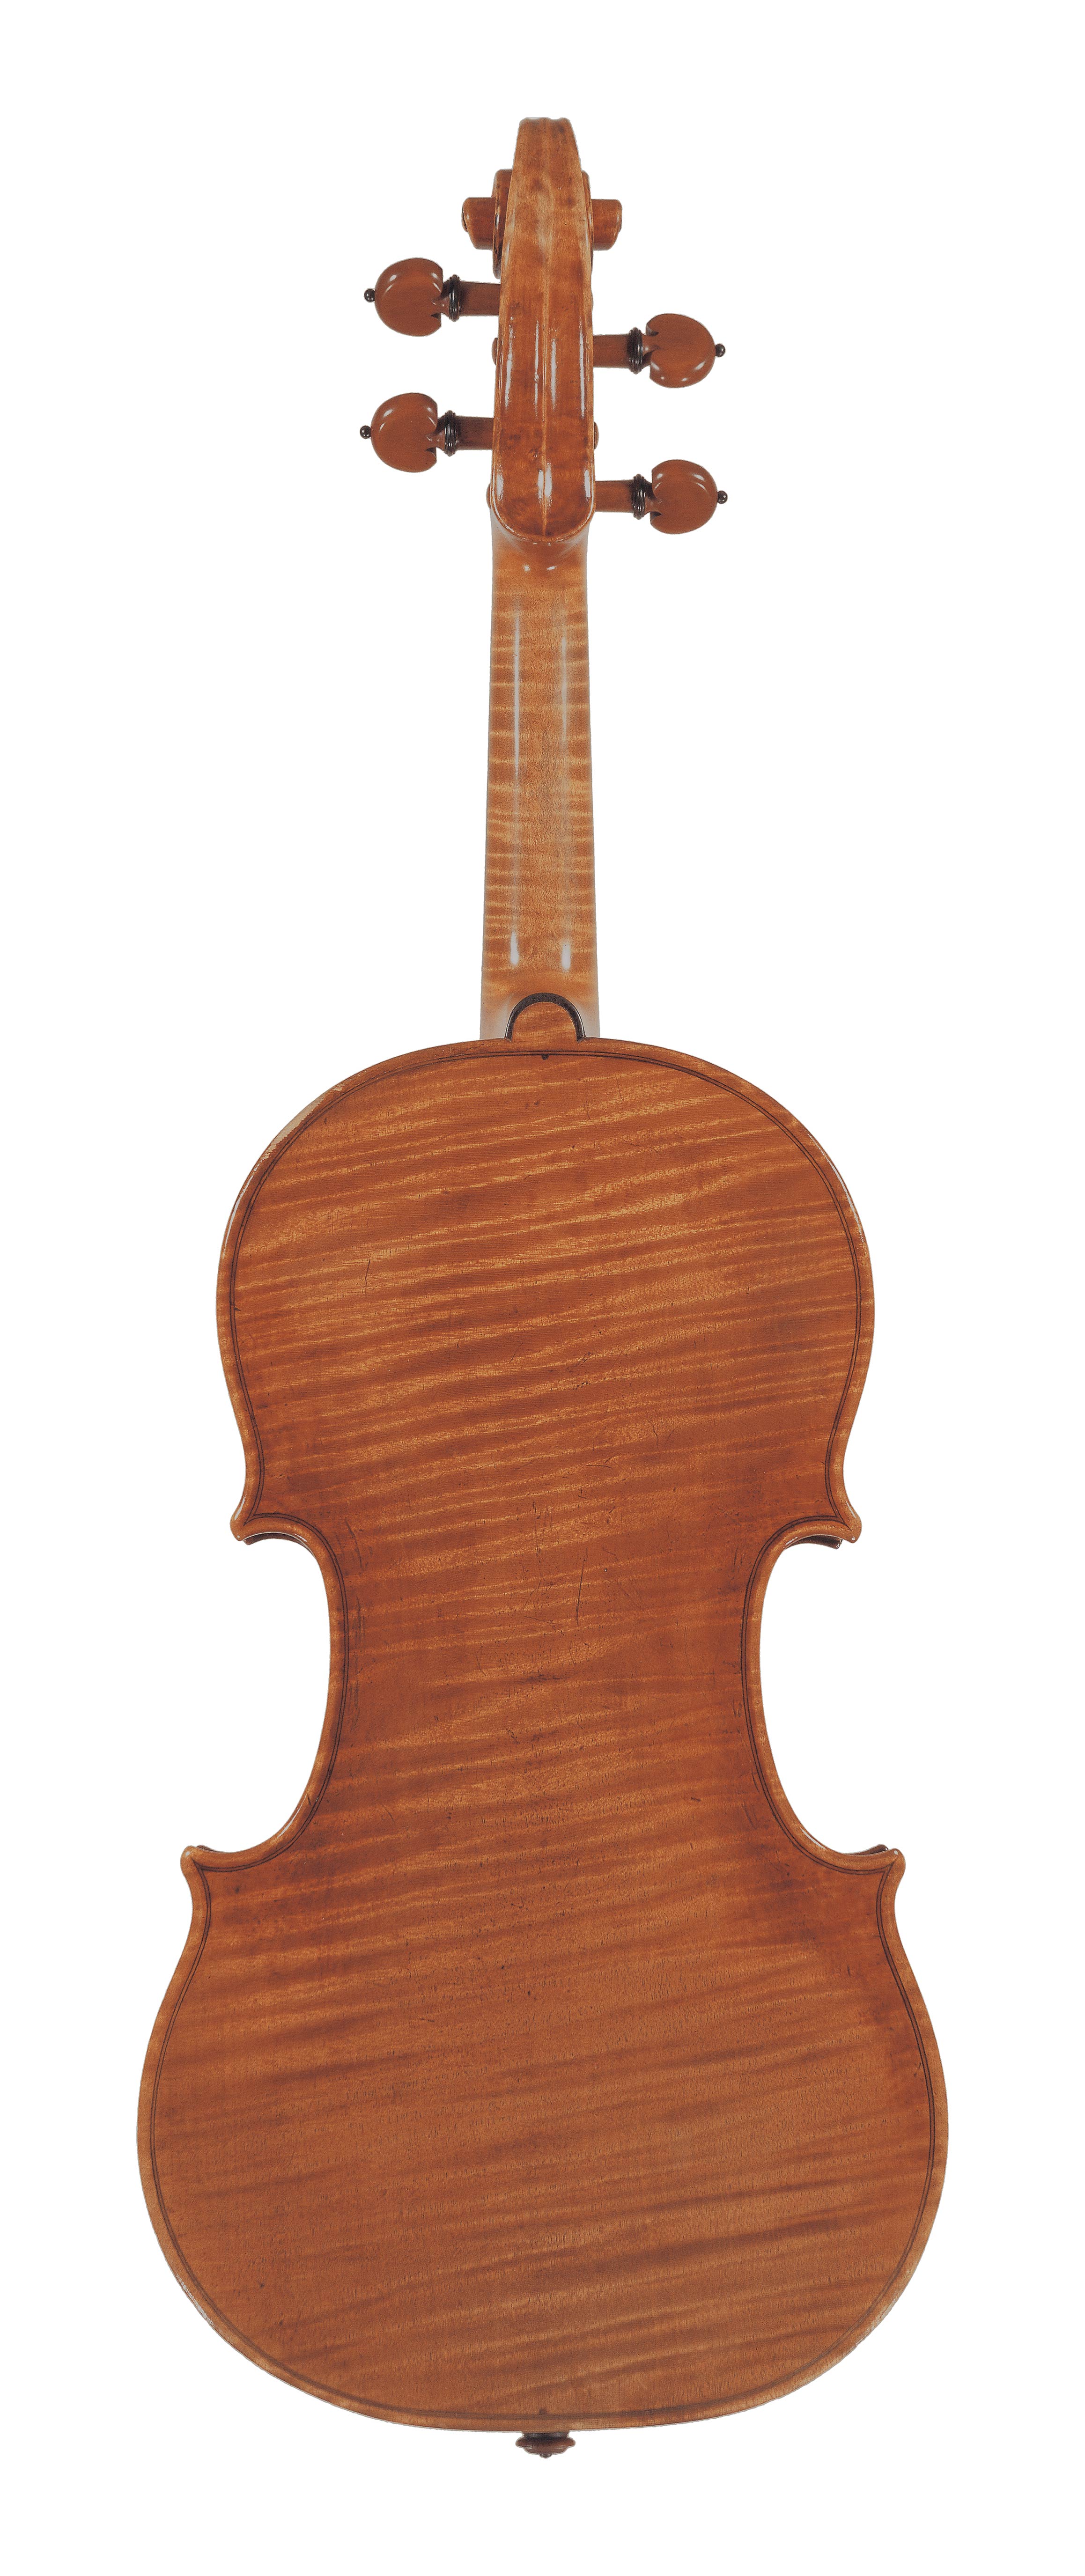 A violin by Antonio Stradivari | Four Centuries Gallery | Ingles ...